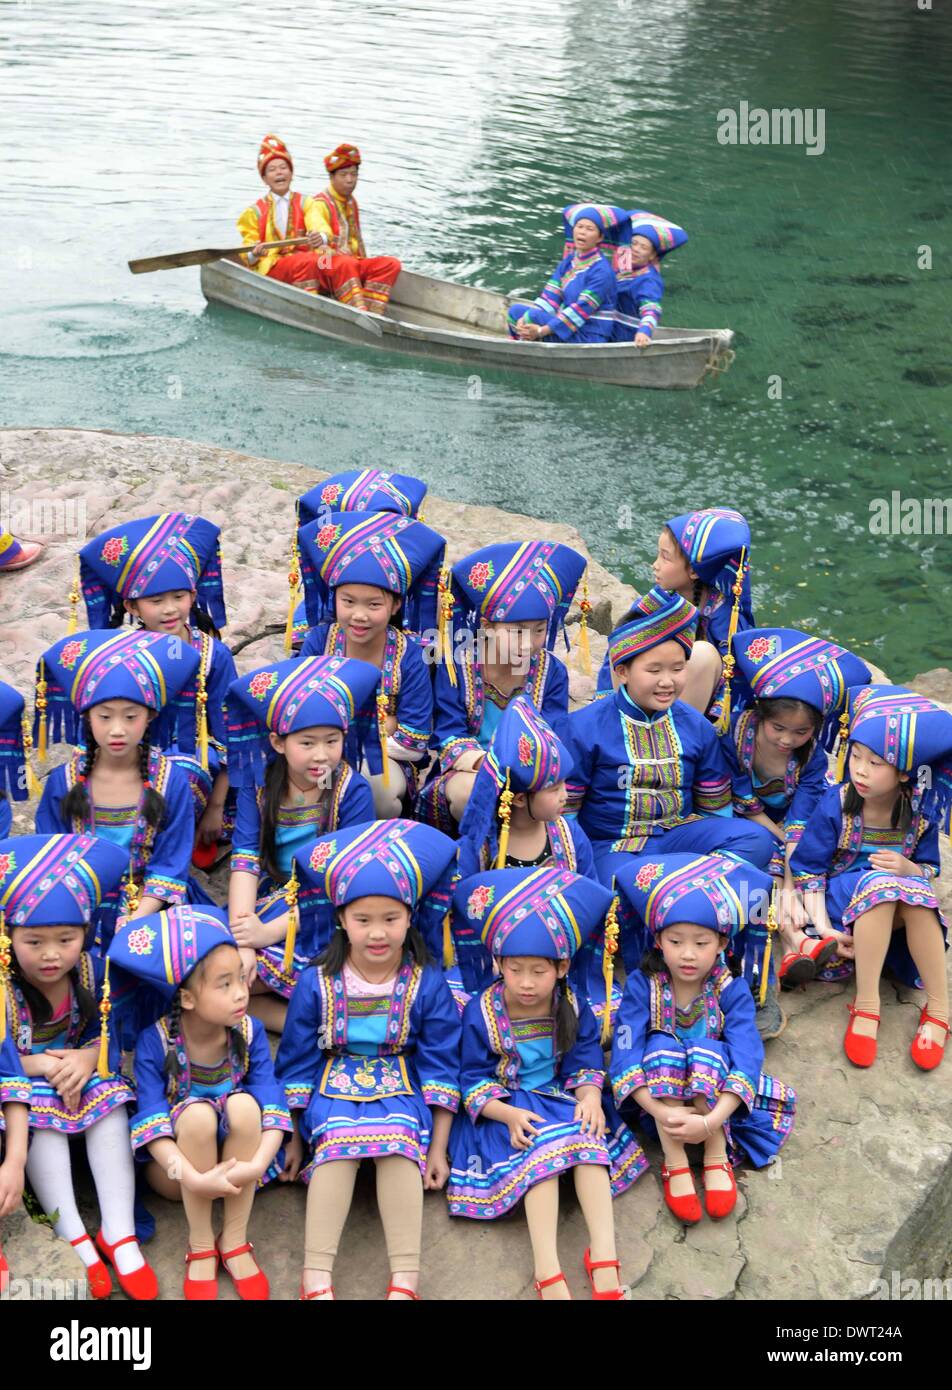 Wuming, la région autonome Zhuang du Guangxi. 13Th Mar, 2014. Les filles du groupe ethnique Zhuang chanter la chanson folklorique à Lingshui région pittoresque de Wuming, comté du sud de la Chine région autonome Zhuang du Guangxi, le 13 mars 2014. Chanteurs de groupe ethnique Zhuang dans le comté de Wuming ont pratiqué des chansons folkloriques et chansons pour saluer l'Antiphonaire venant d'une chanson folklorique traditionnelle, qui se tiendra du 1 au 7 avril de cette année. © Zhou Hua/Xinhua/Alamy Live News Banque D'Images